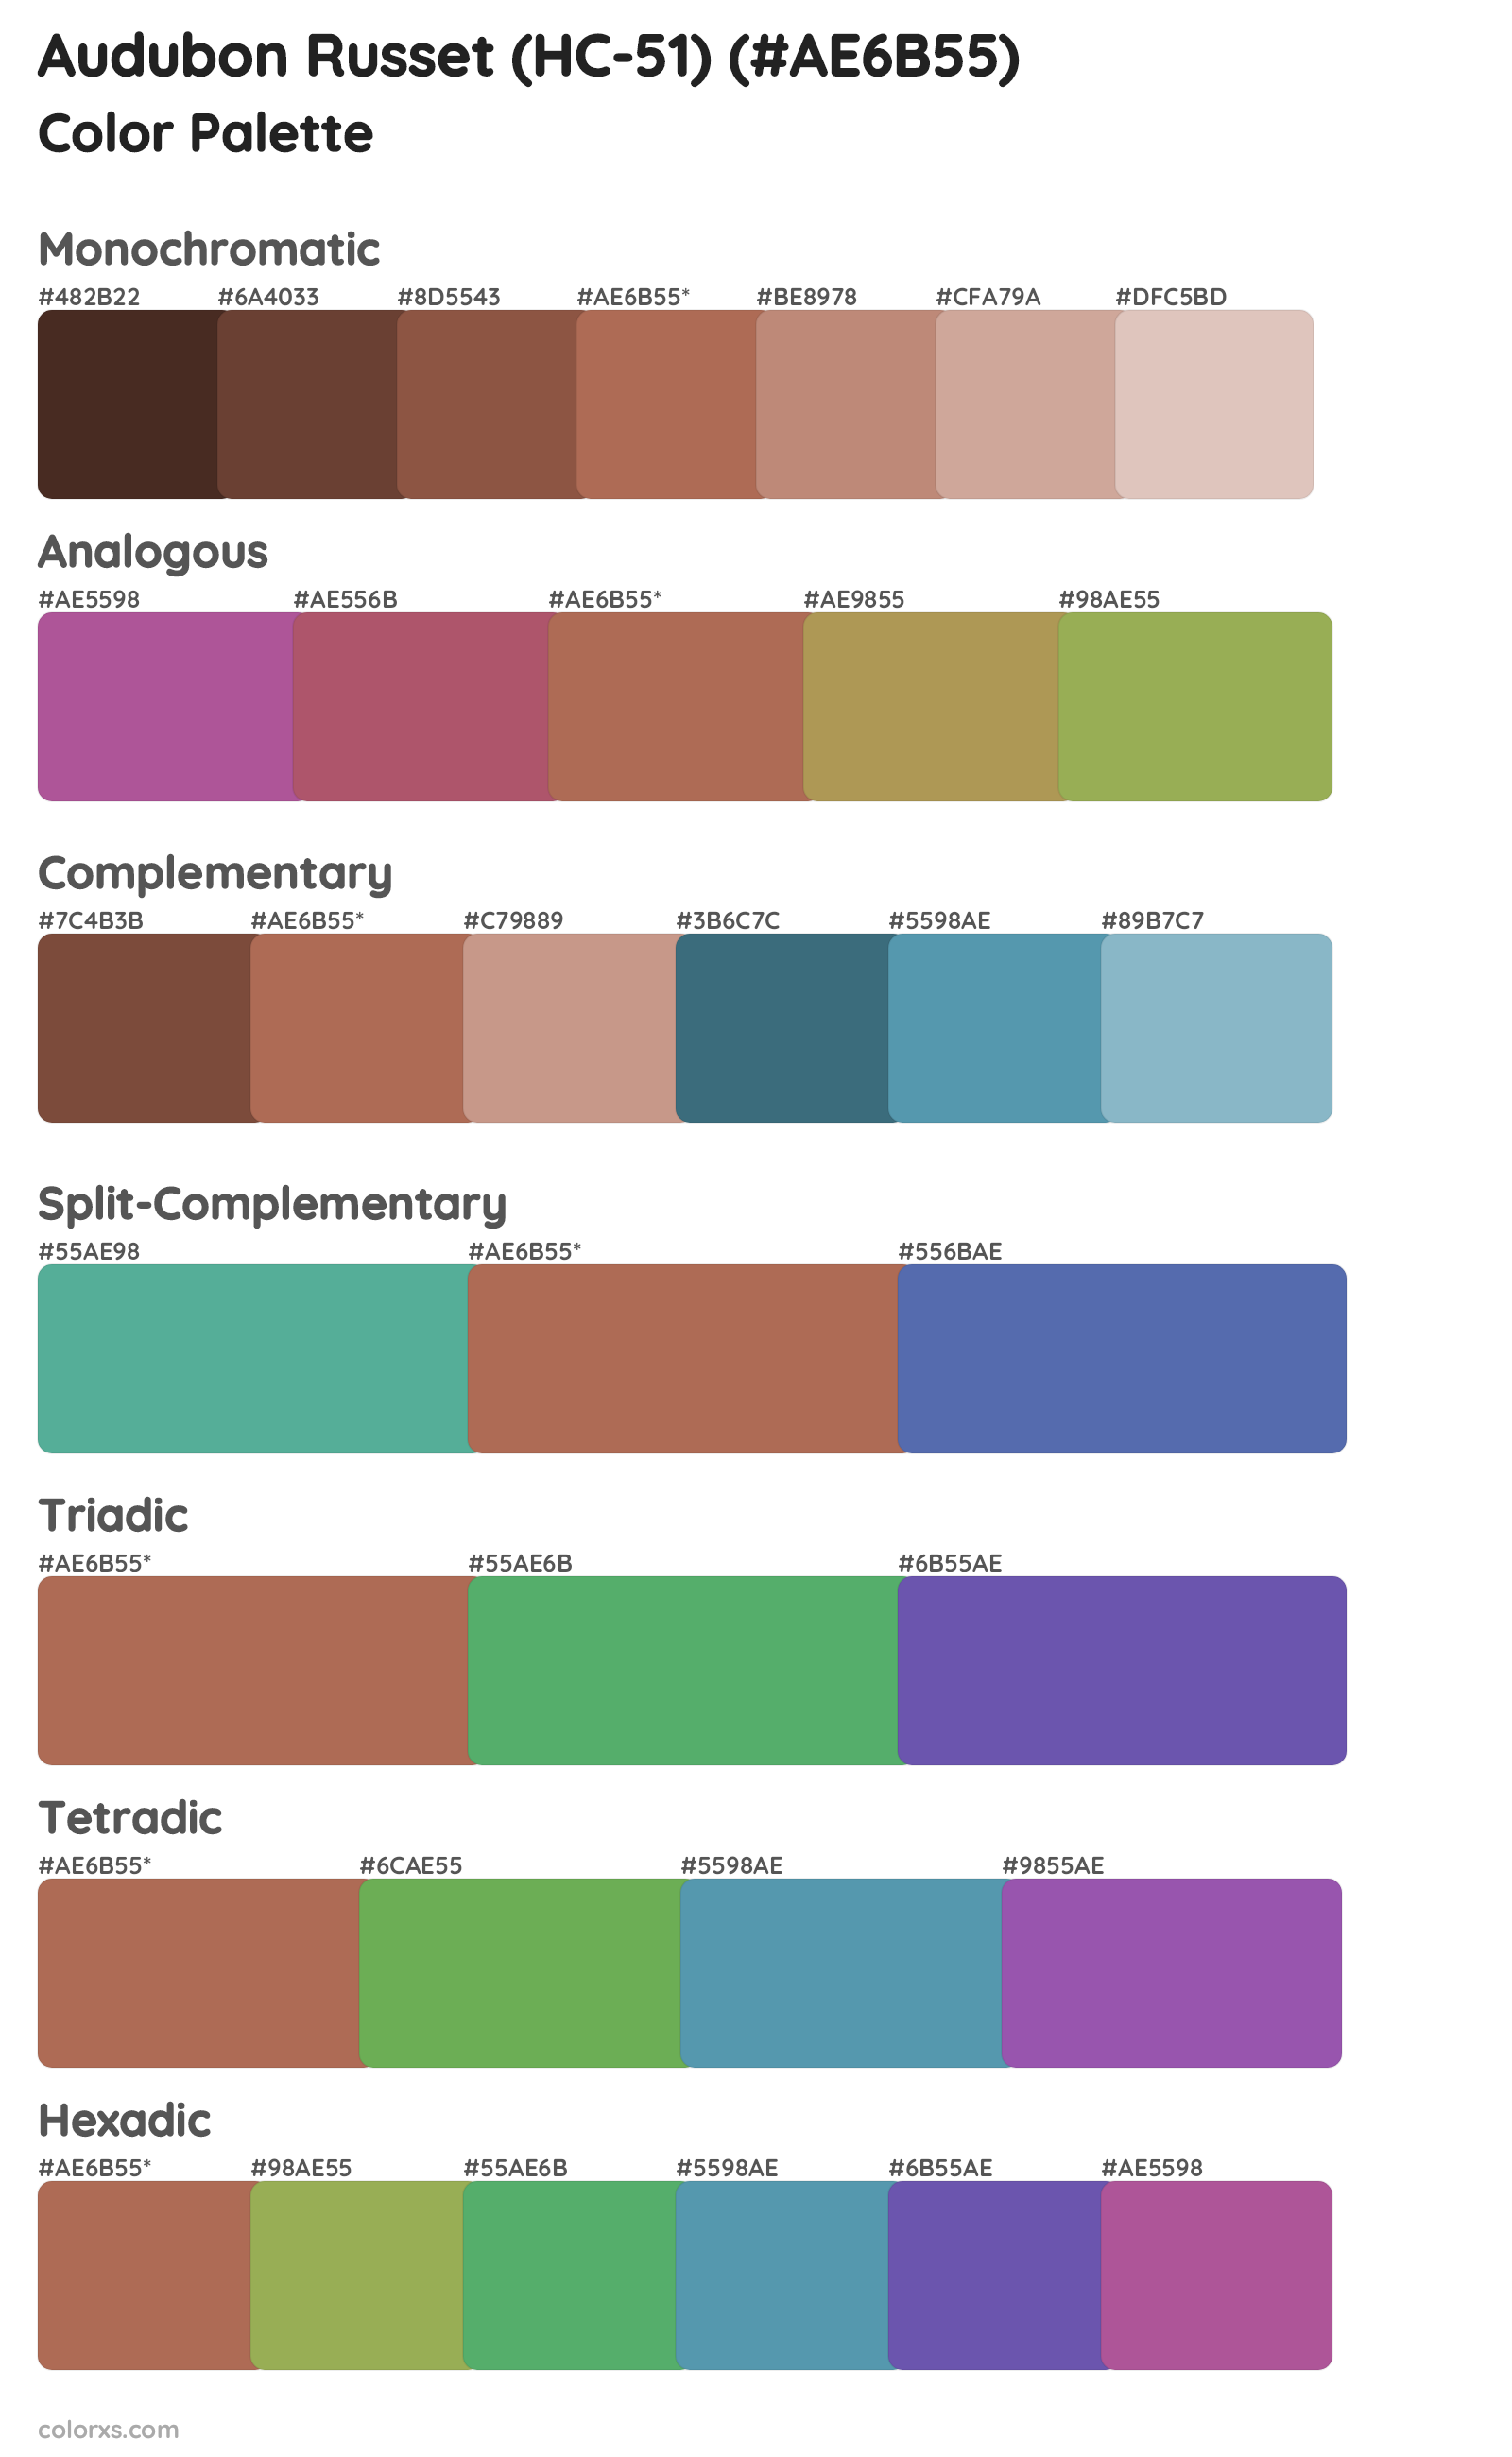 Audubon Russet (HC-51) Color Scheme Palettes